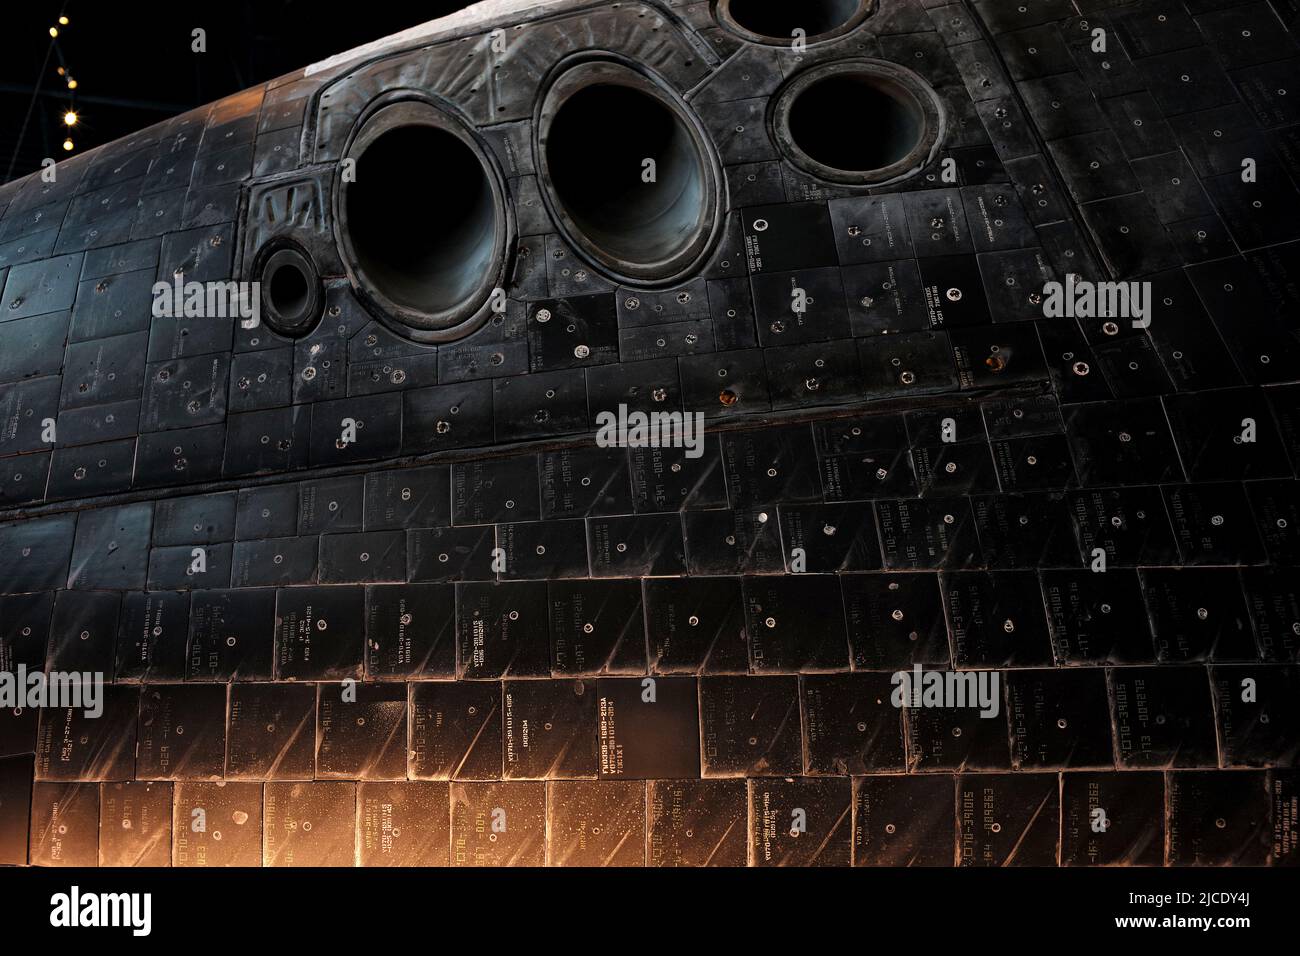 Carreaux de chaleur vus sur la navette spatiale américaine Discovery, Steven F. Udvar-Hazy Centre, en Virginie. Musée de l'air et de l'espace des États-Unis Banque D'Images